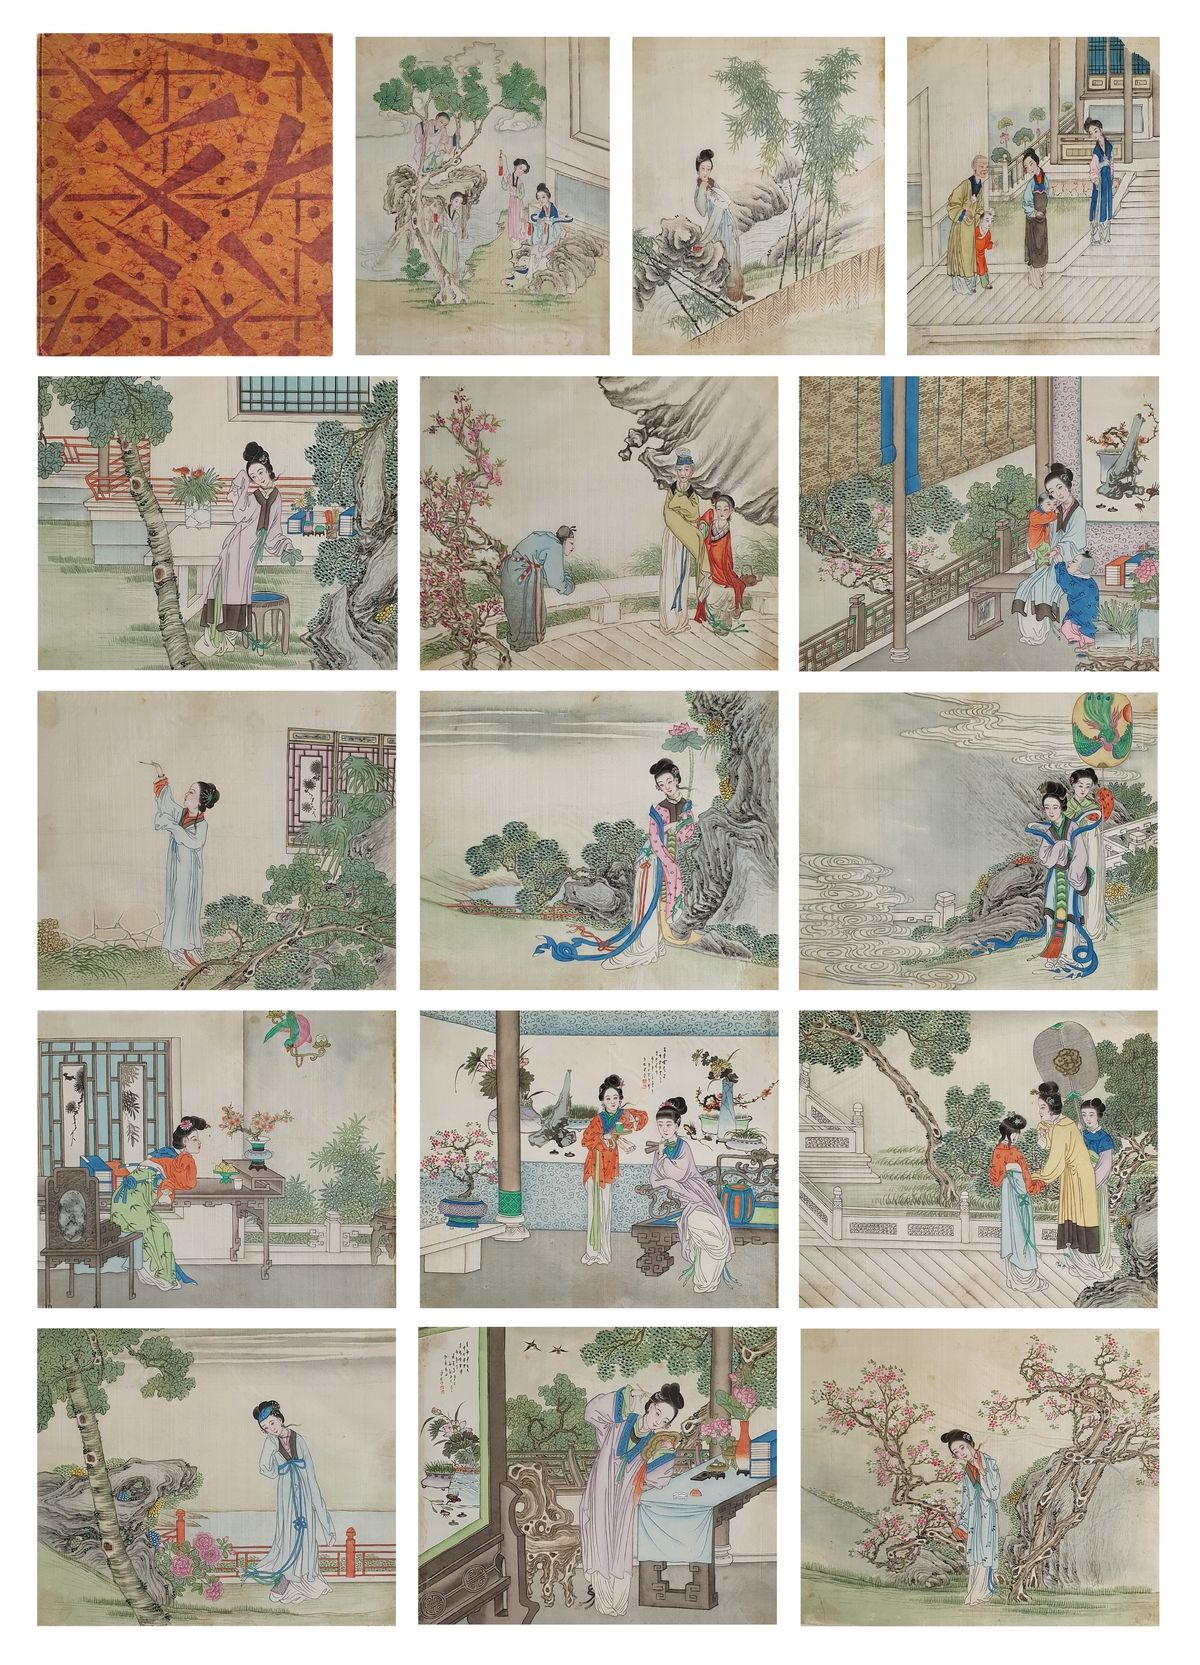 CHINE ca.1900 Escenas de la vida
Carpeta que contiene 15 pinturas al temple sobr&hellip;